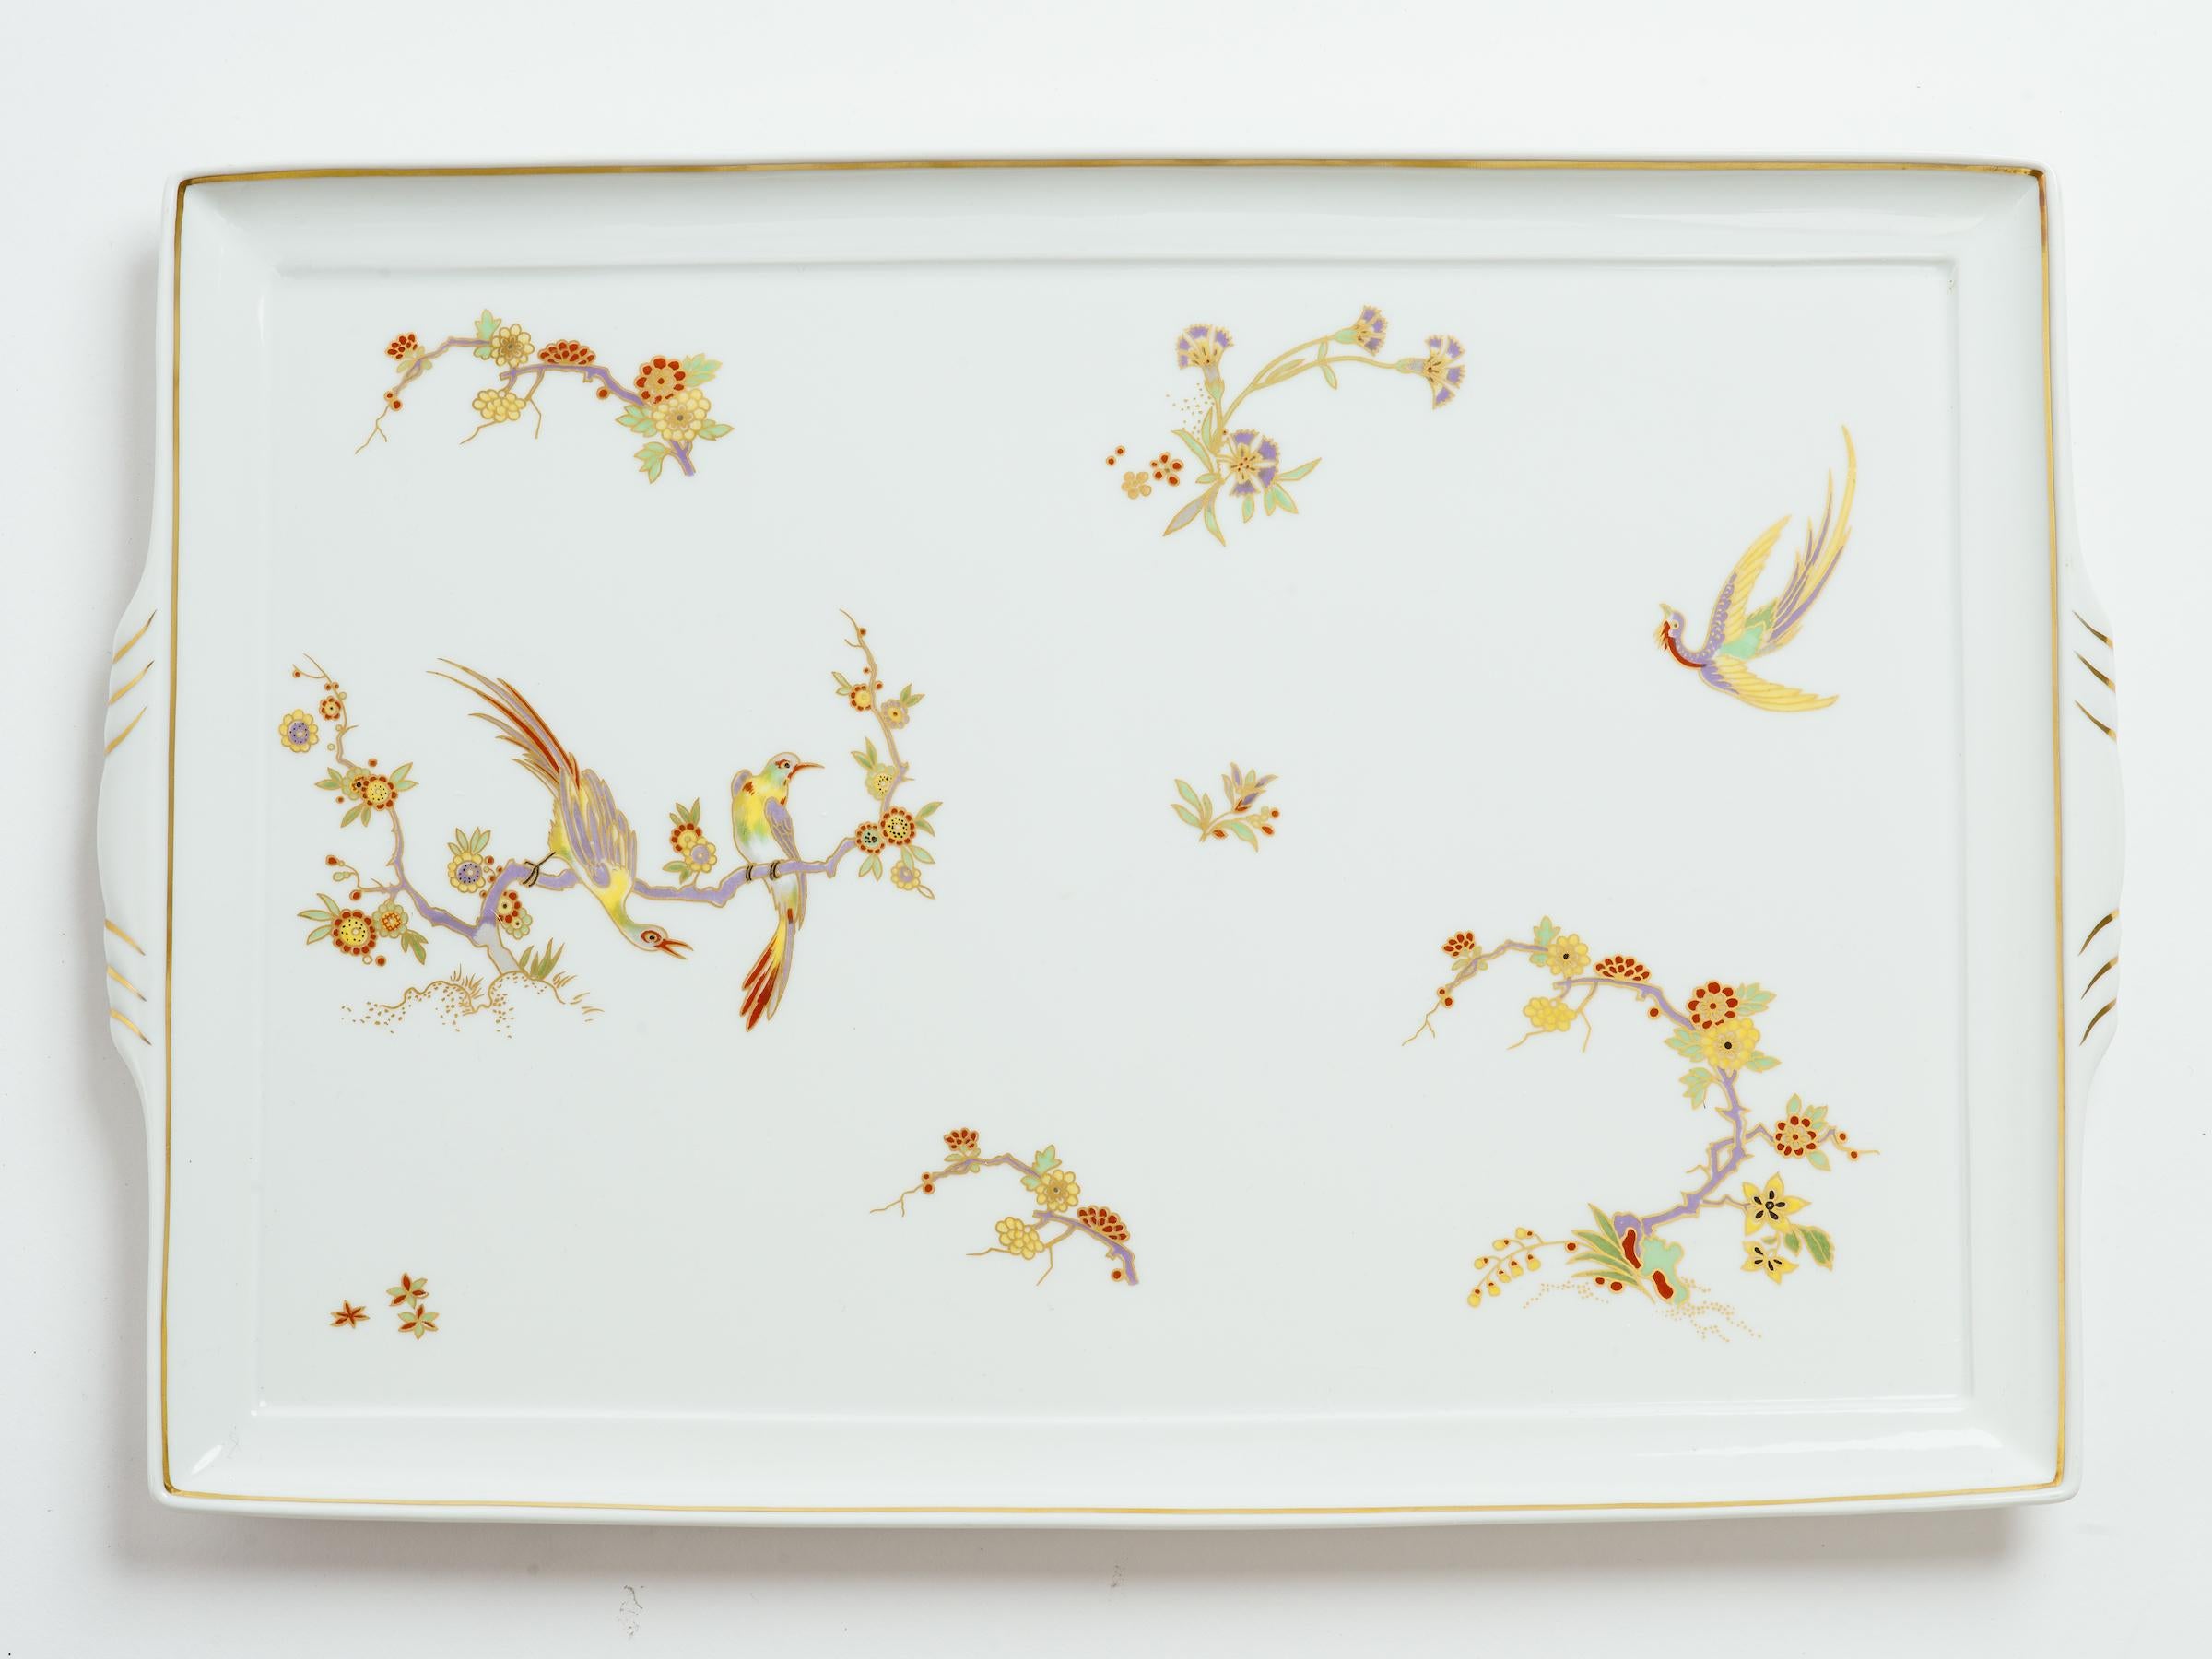 Richard Ginori Birds of Paradise Gilt Decorated Porcelain Tray 1